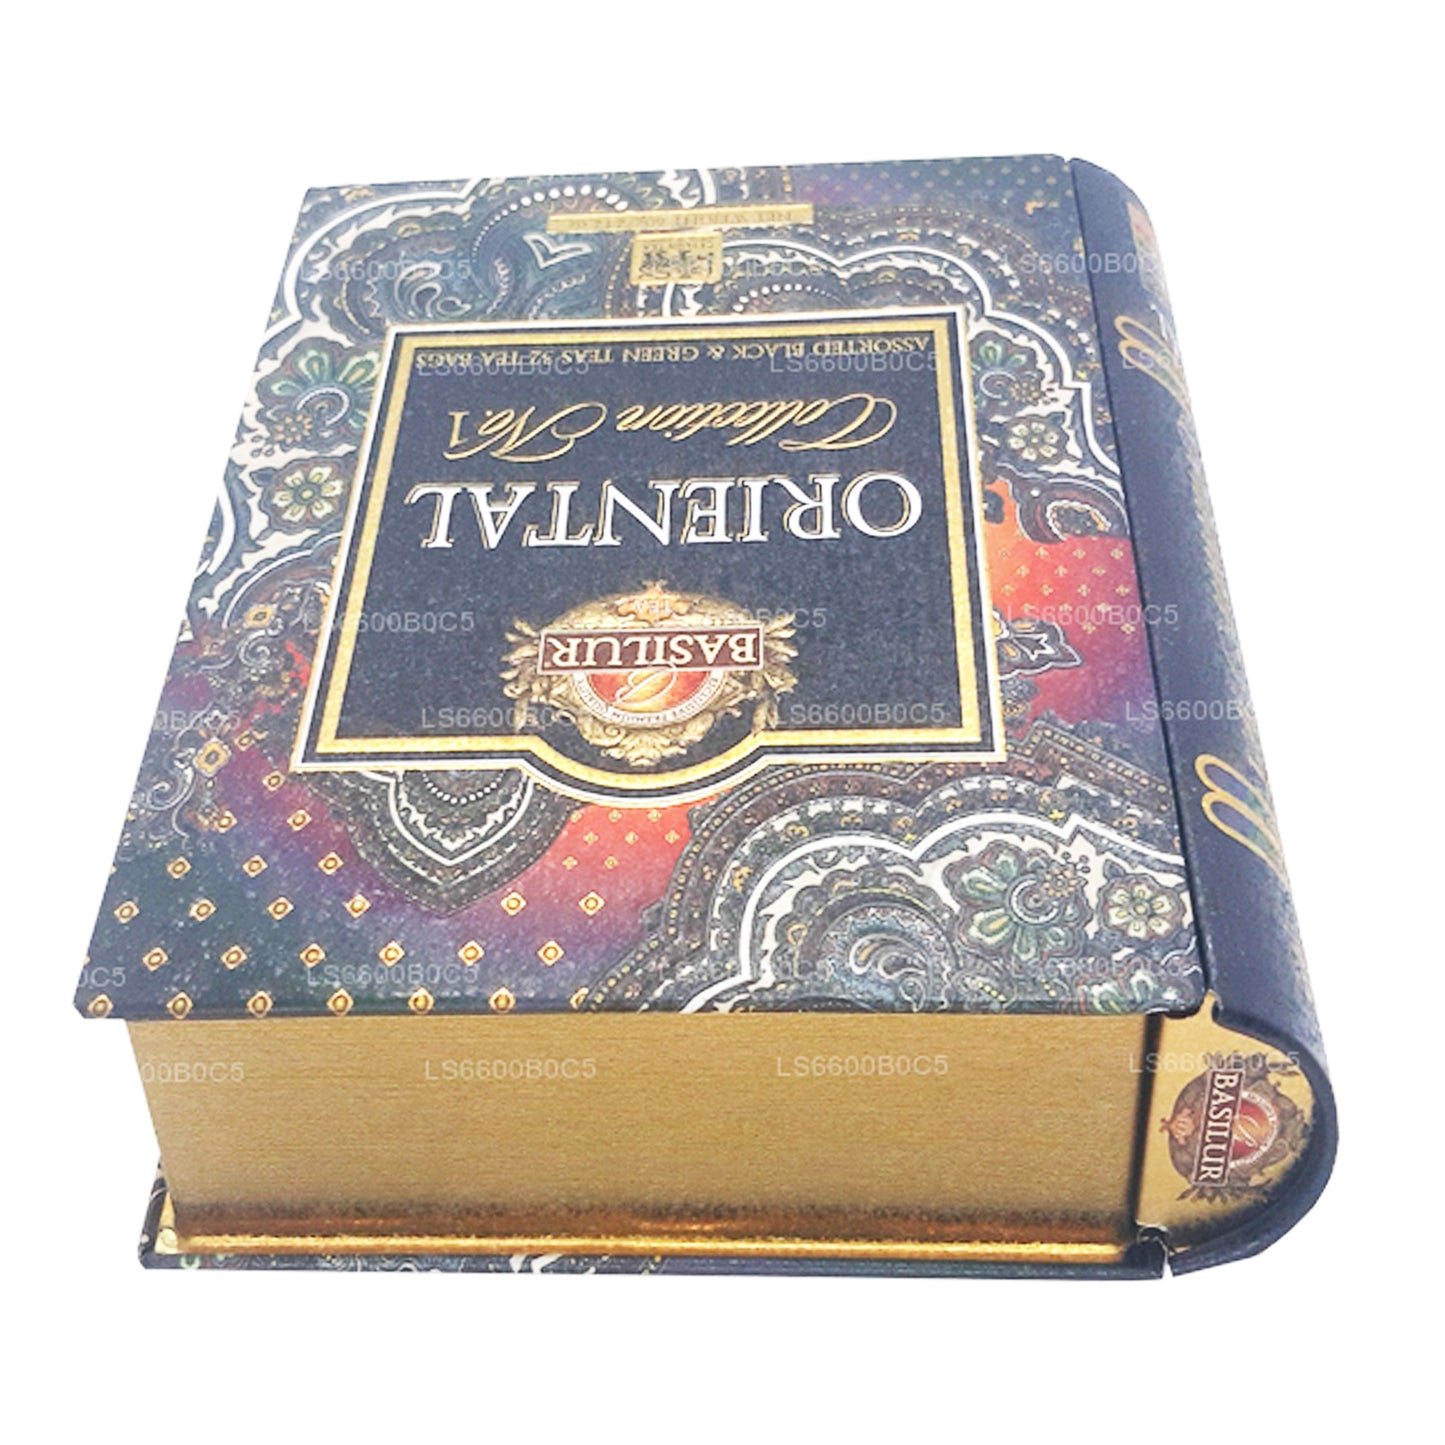 Libro de té Basilur Oriental Collection, volumen 1 (60 g), 32 bolsitas de té